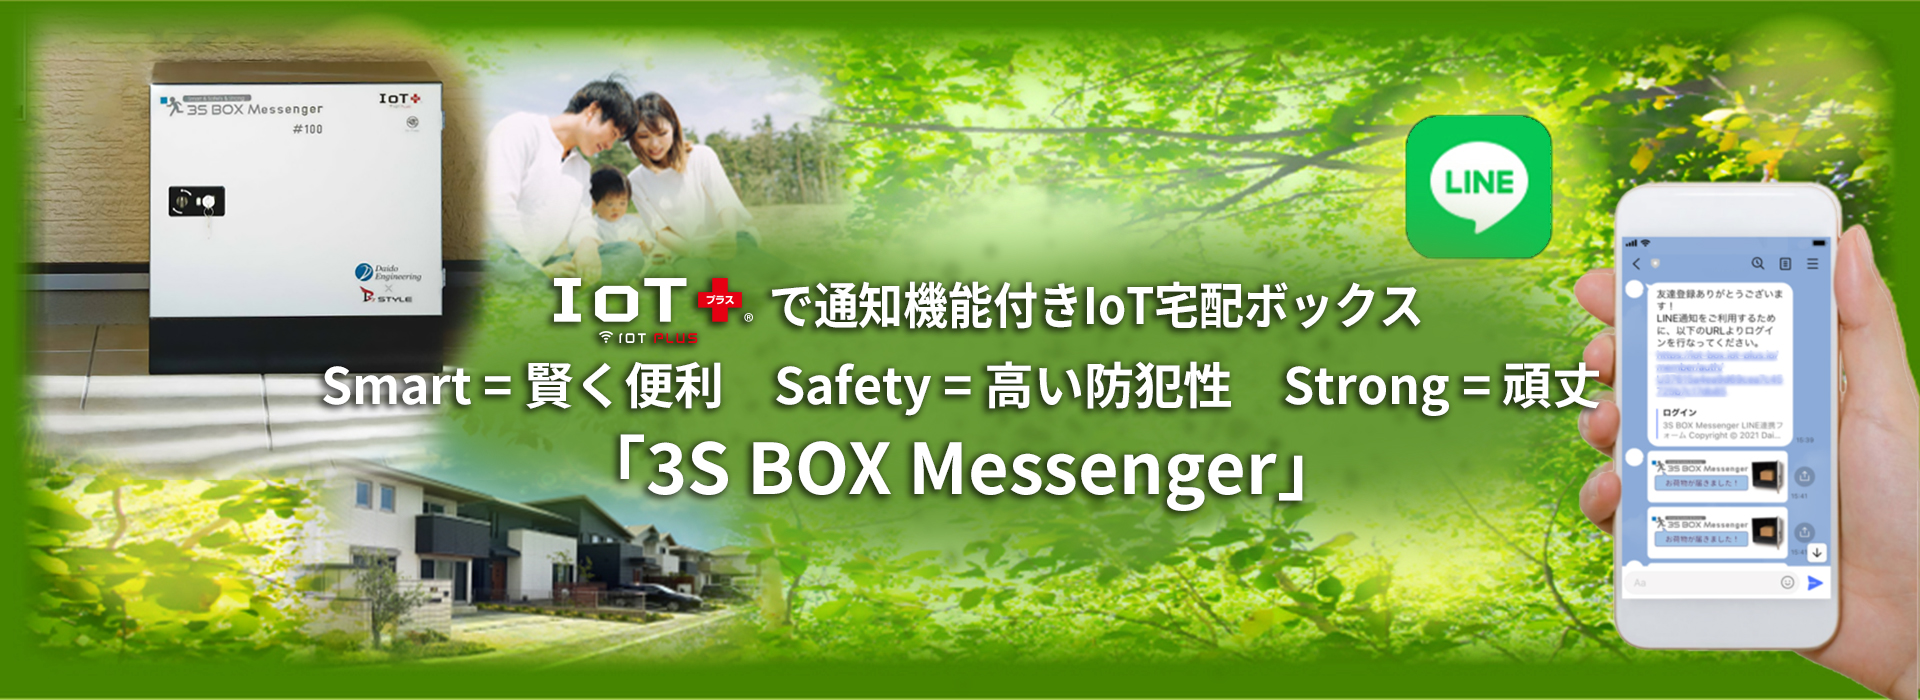 通知機能つきIoT宅配ボックス「3S BOX Messenger」